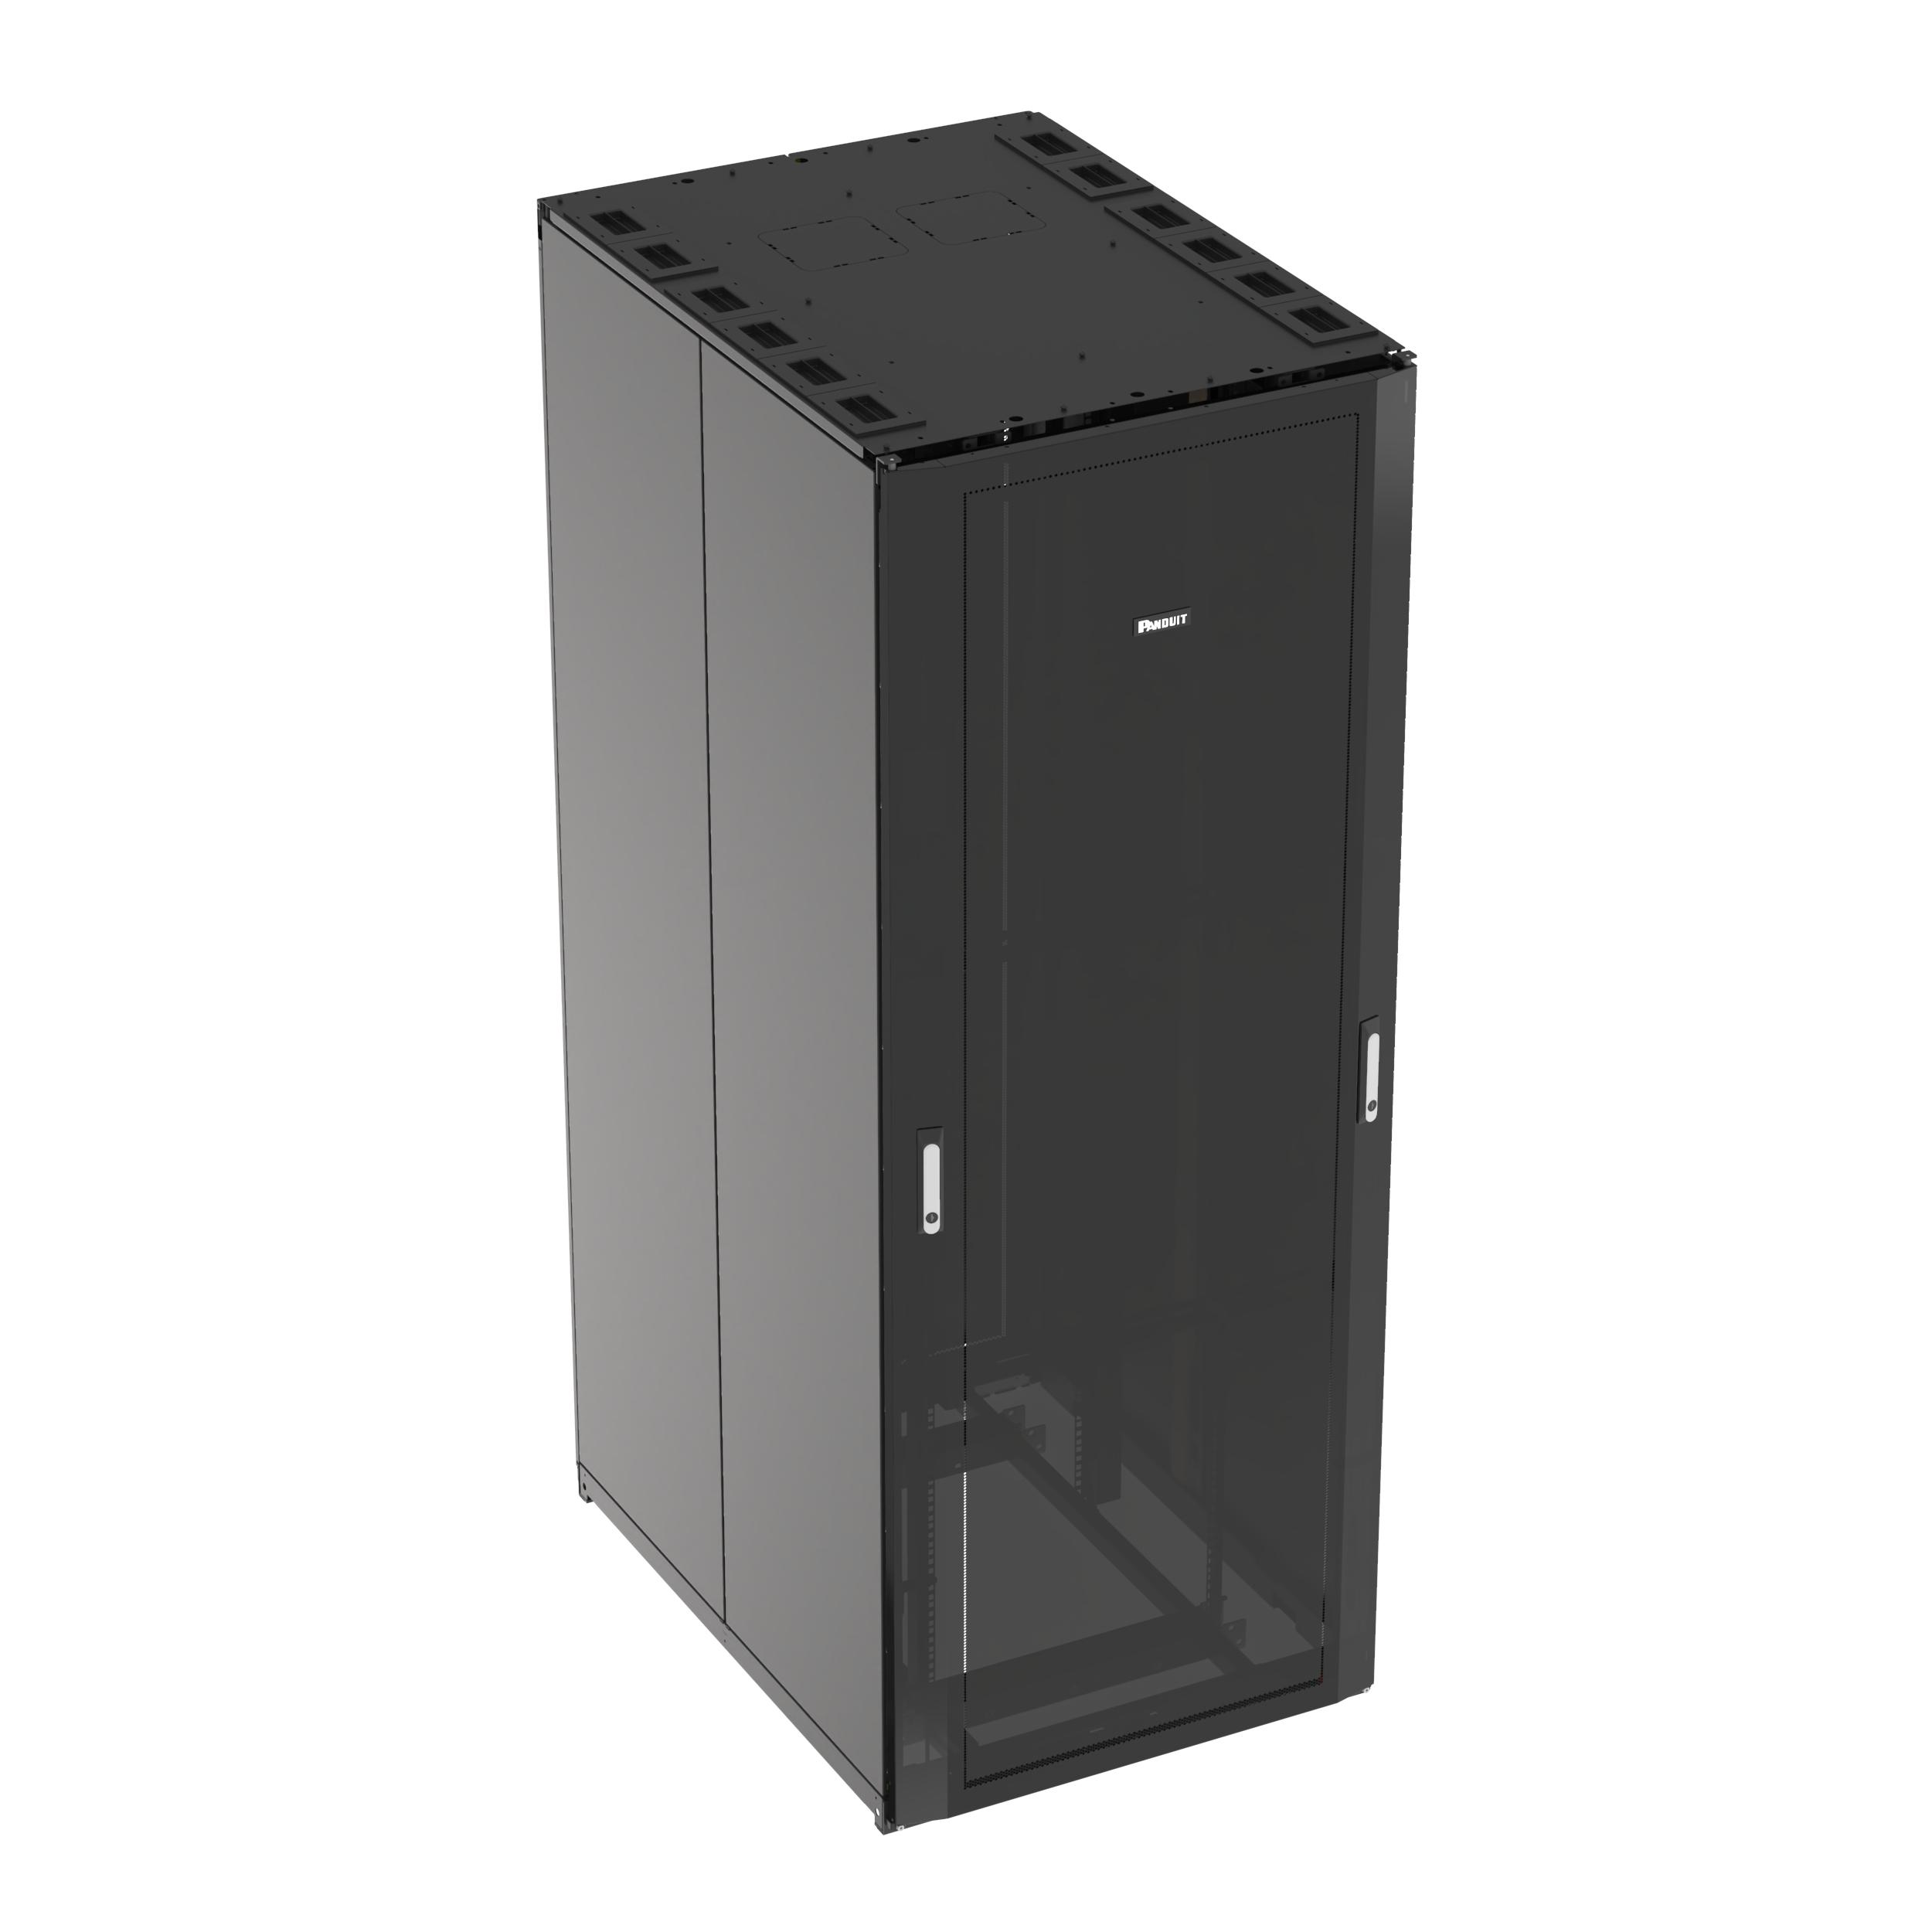 Panduit N8512BC Net-Access™ N-Type Network Cabinet, 45 RU, Black